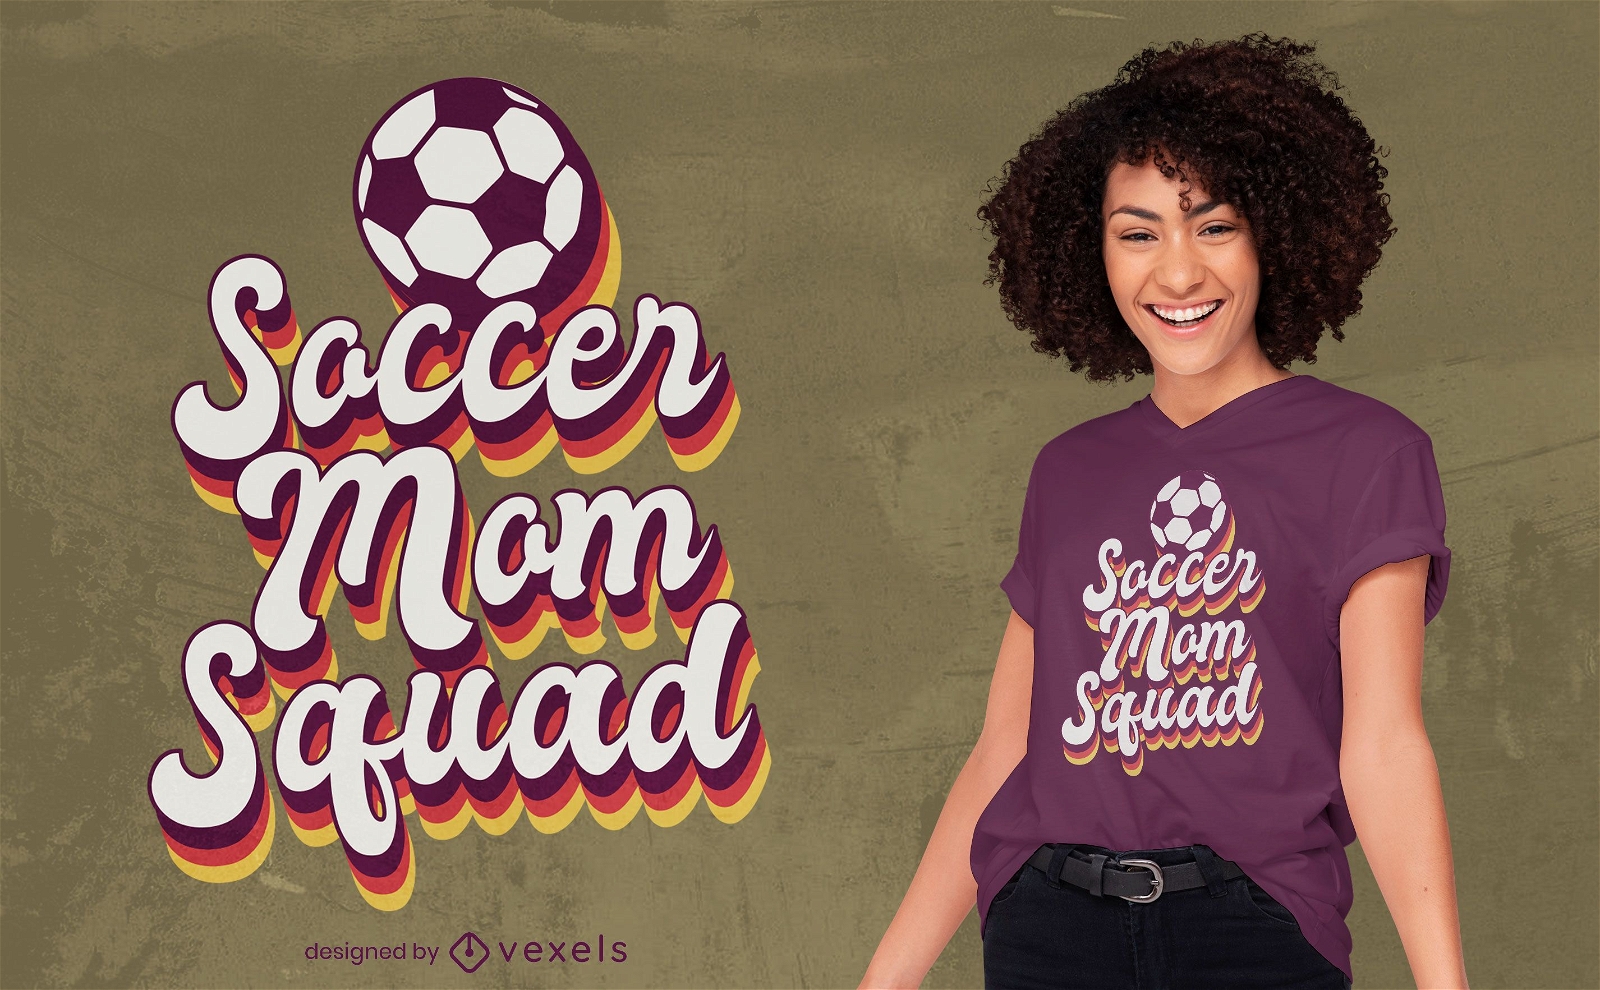 Diseño de camiseta soccer mom squad